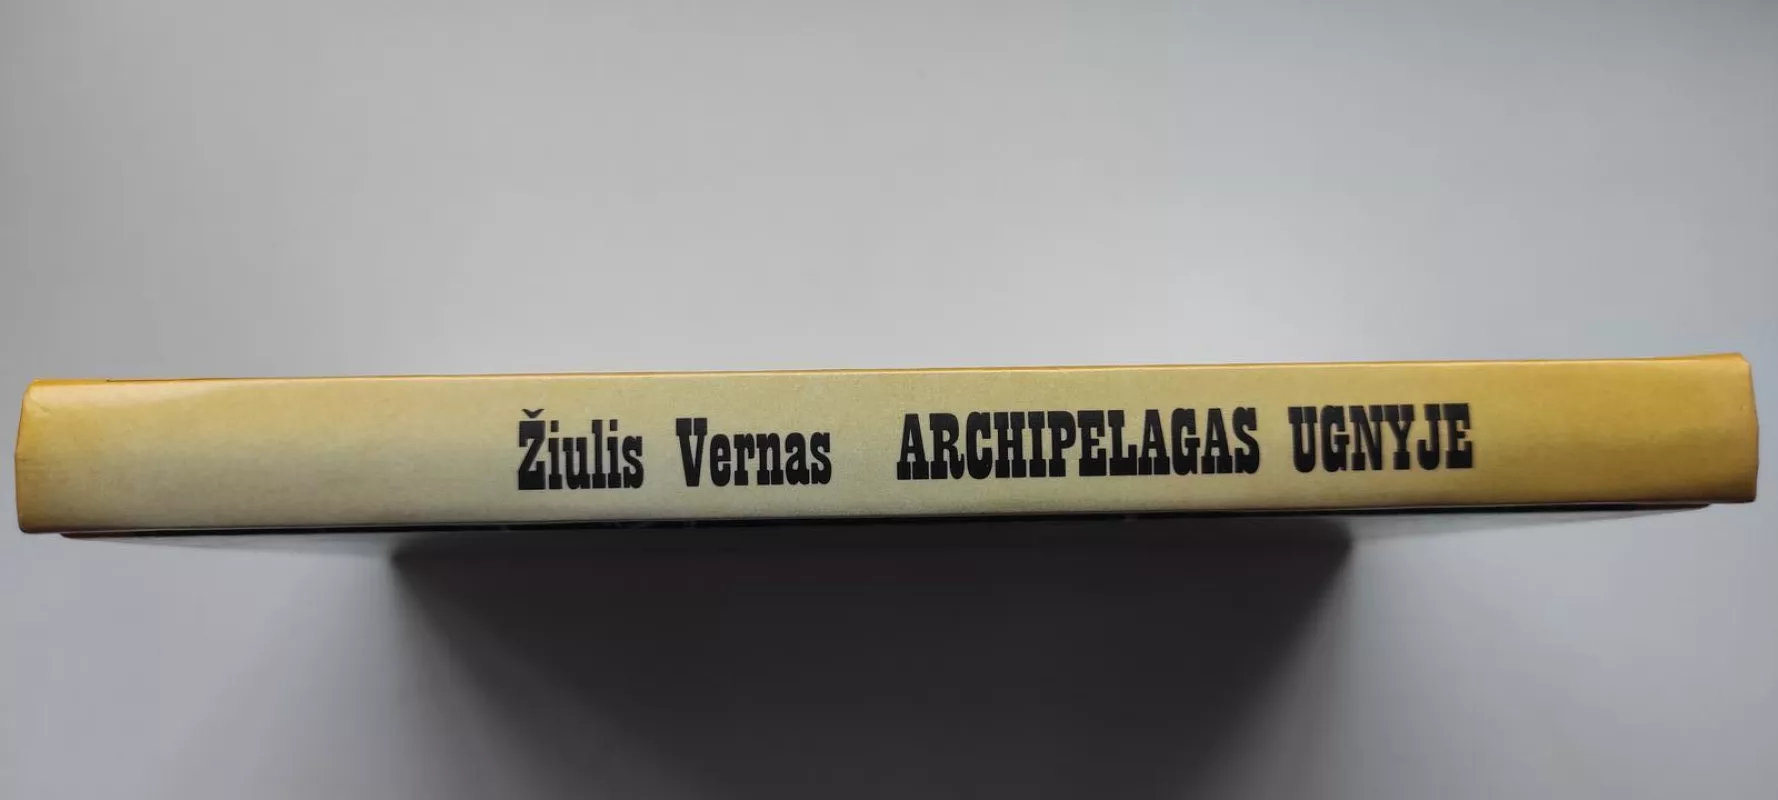 Archipelagas ugnyje - Žiulis Vernas, knyga